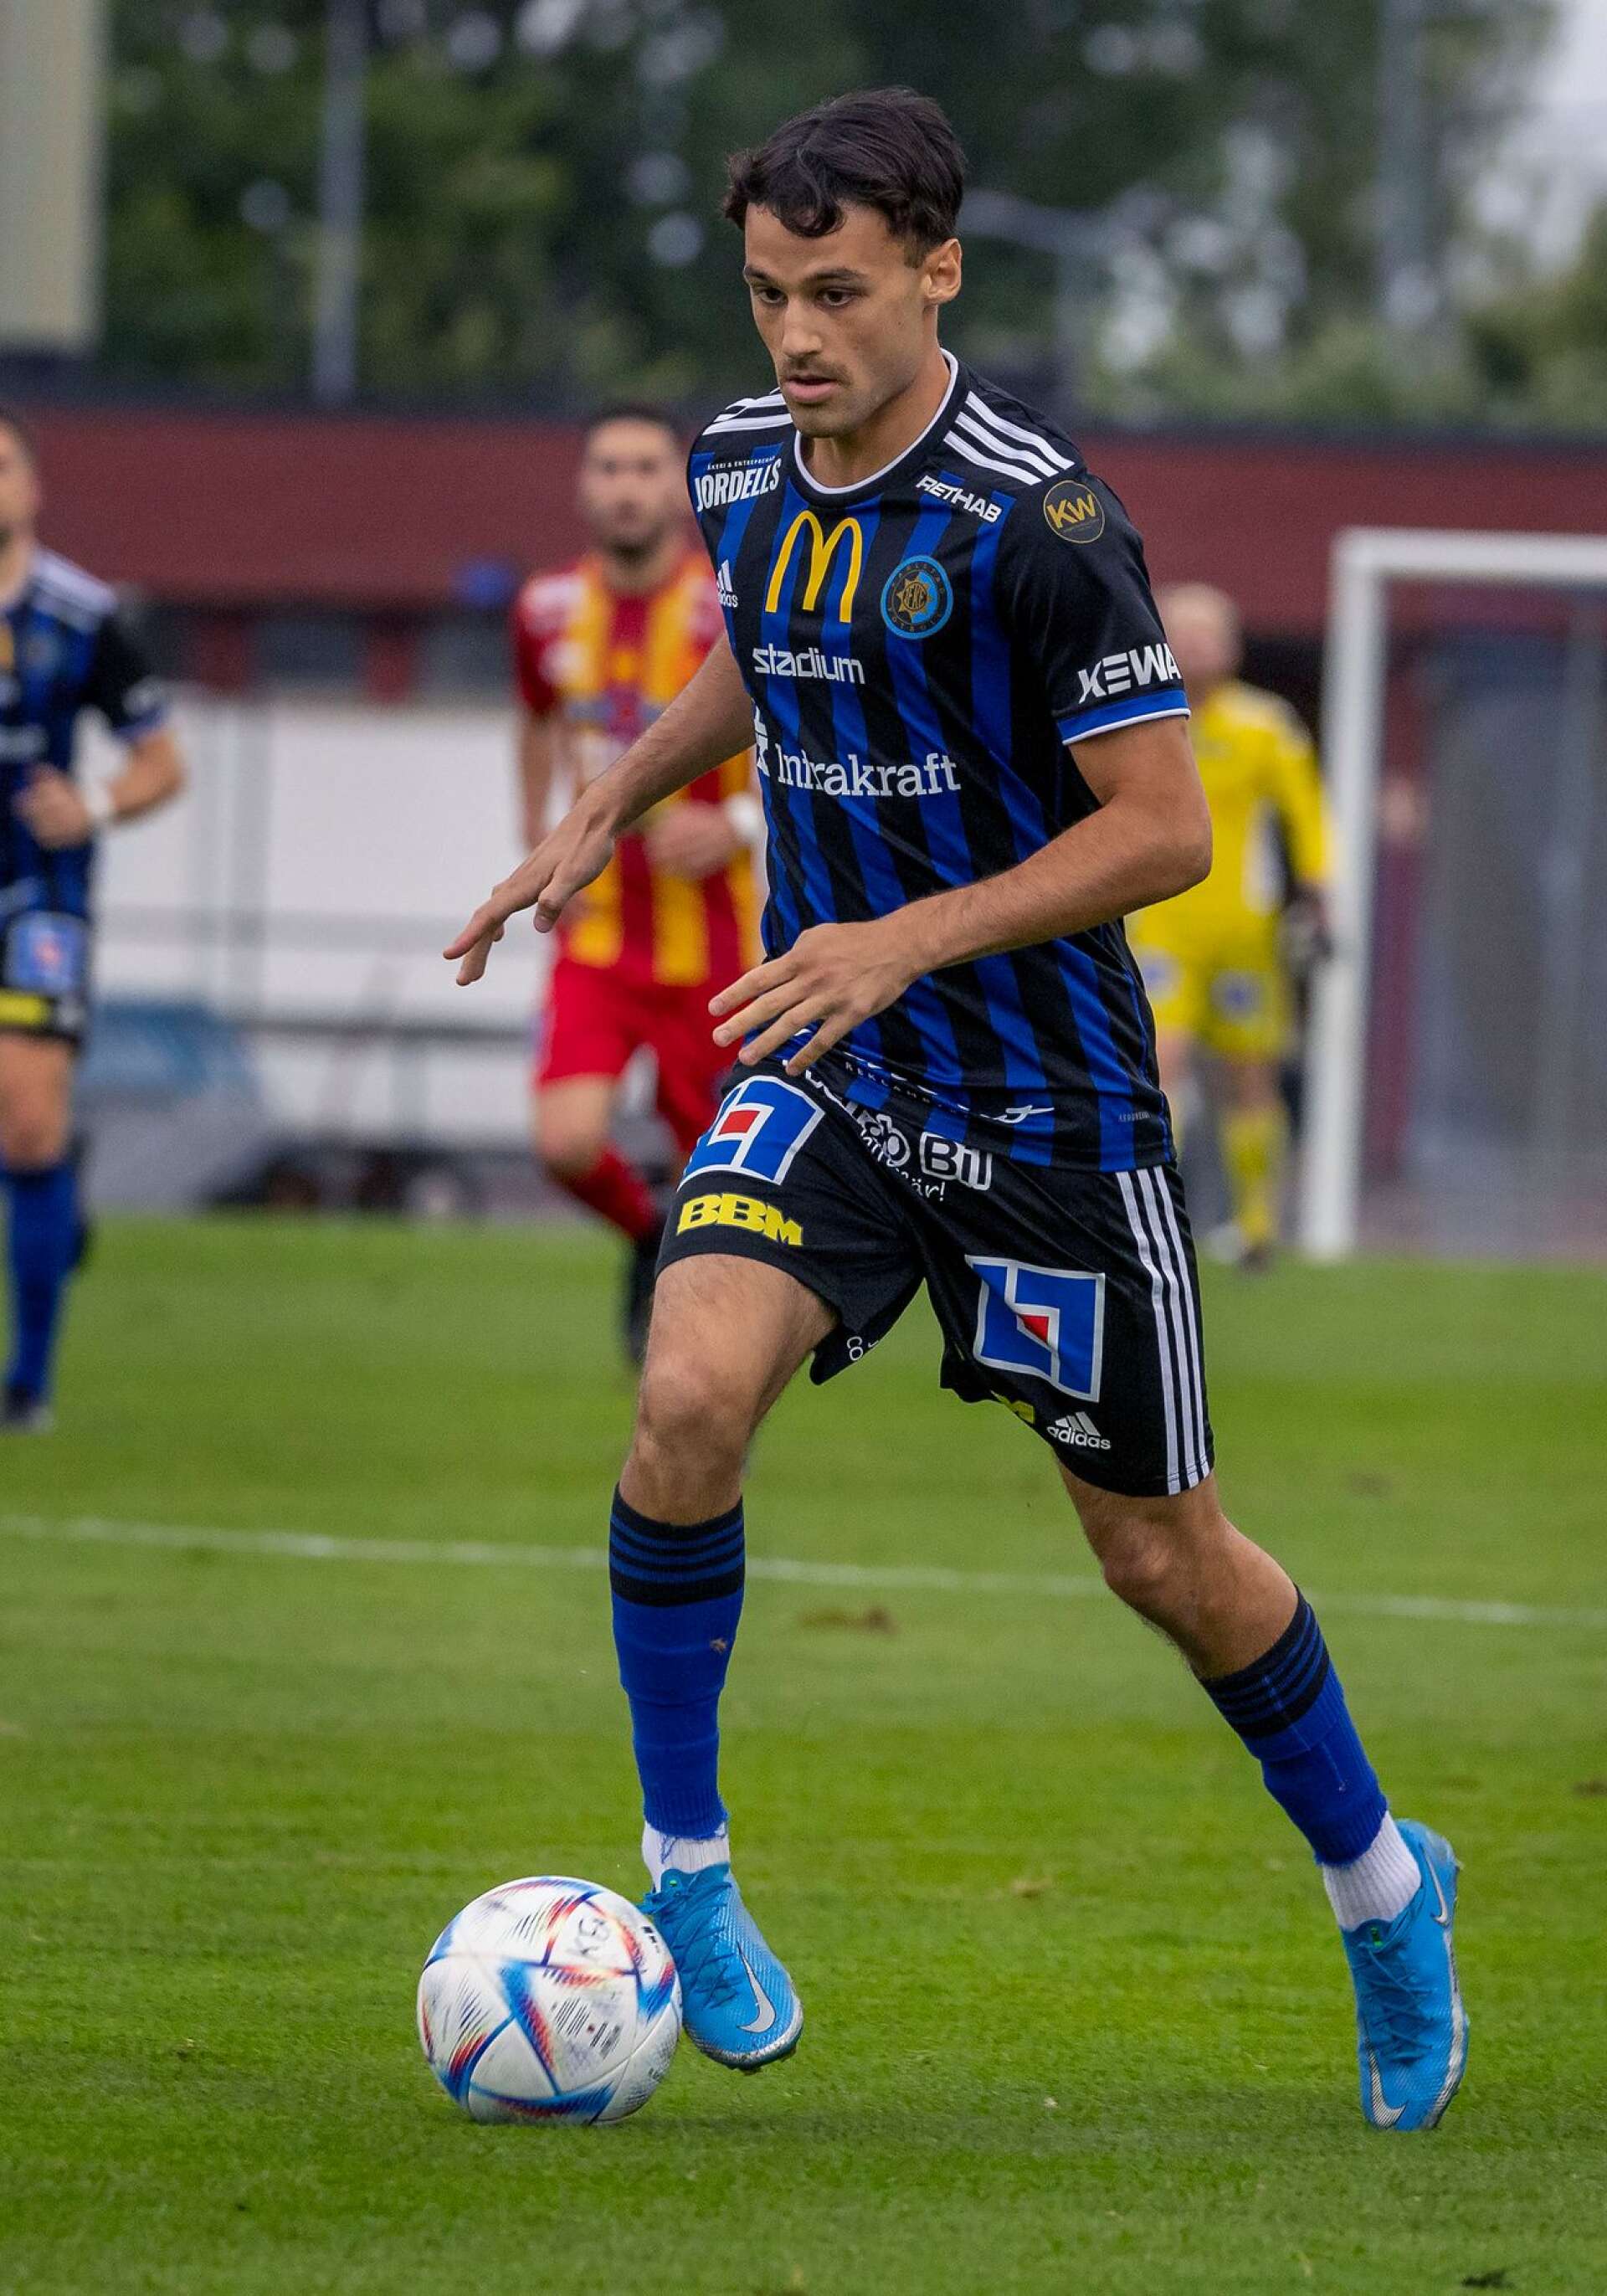 Filip Johansson Bahar stod för ett mål i fjol. Men väntas få en ännu större roll i årets lag.